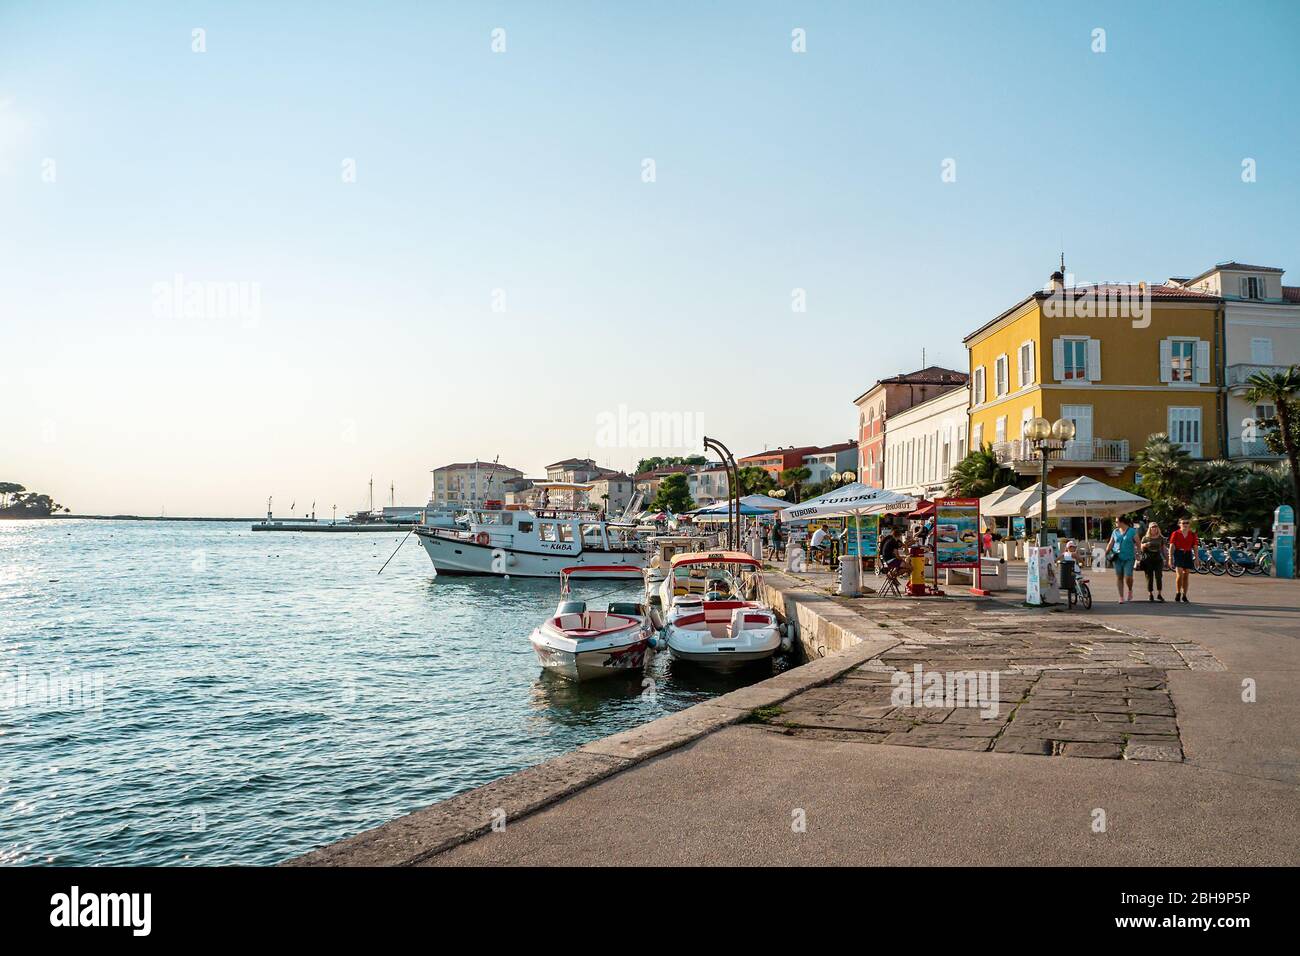 28. August 2018, Porec, Istrien, Kroatien: Boote im Hafen von Marina Porec auf der Halbinsel Istrien, Kroatien. Stockfoto